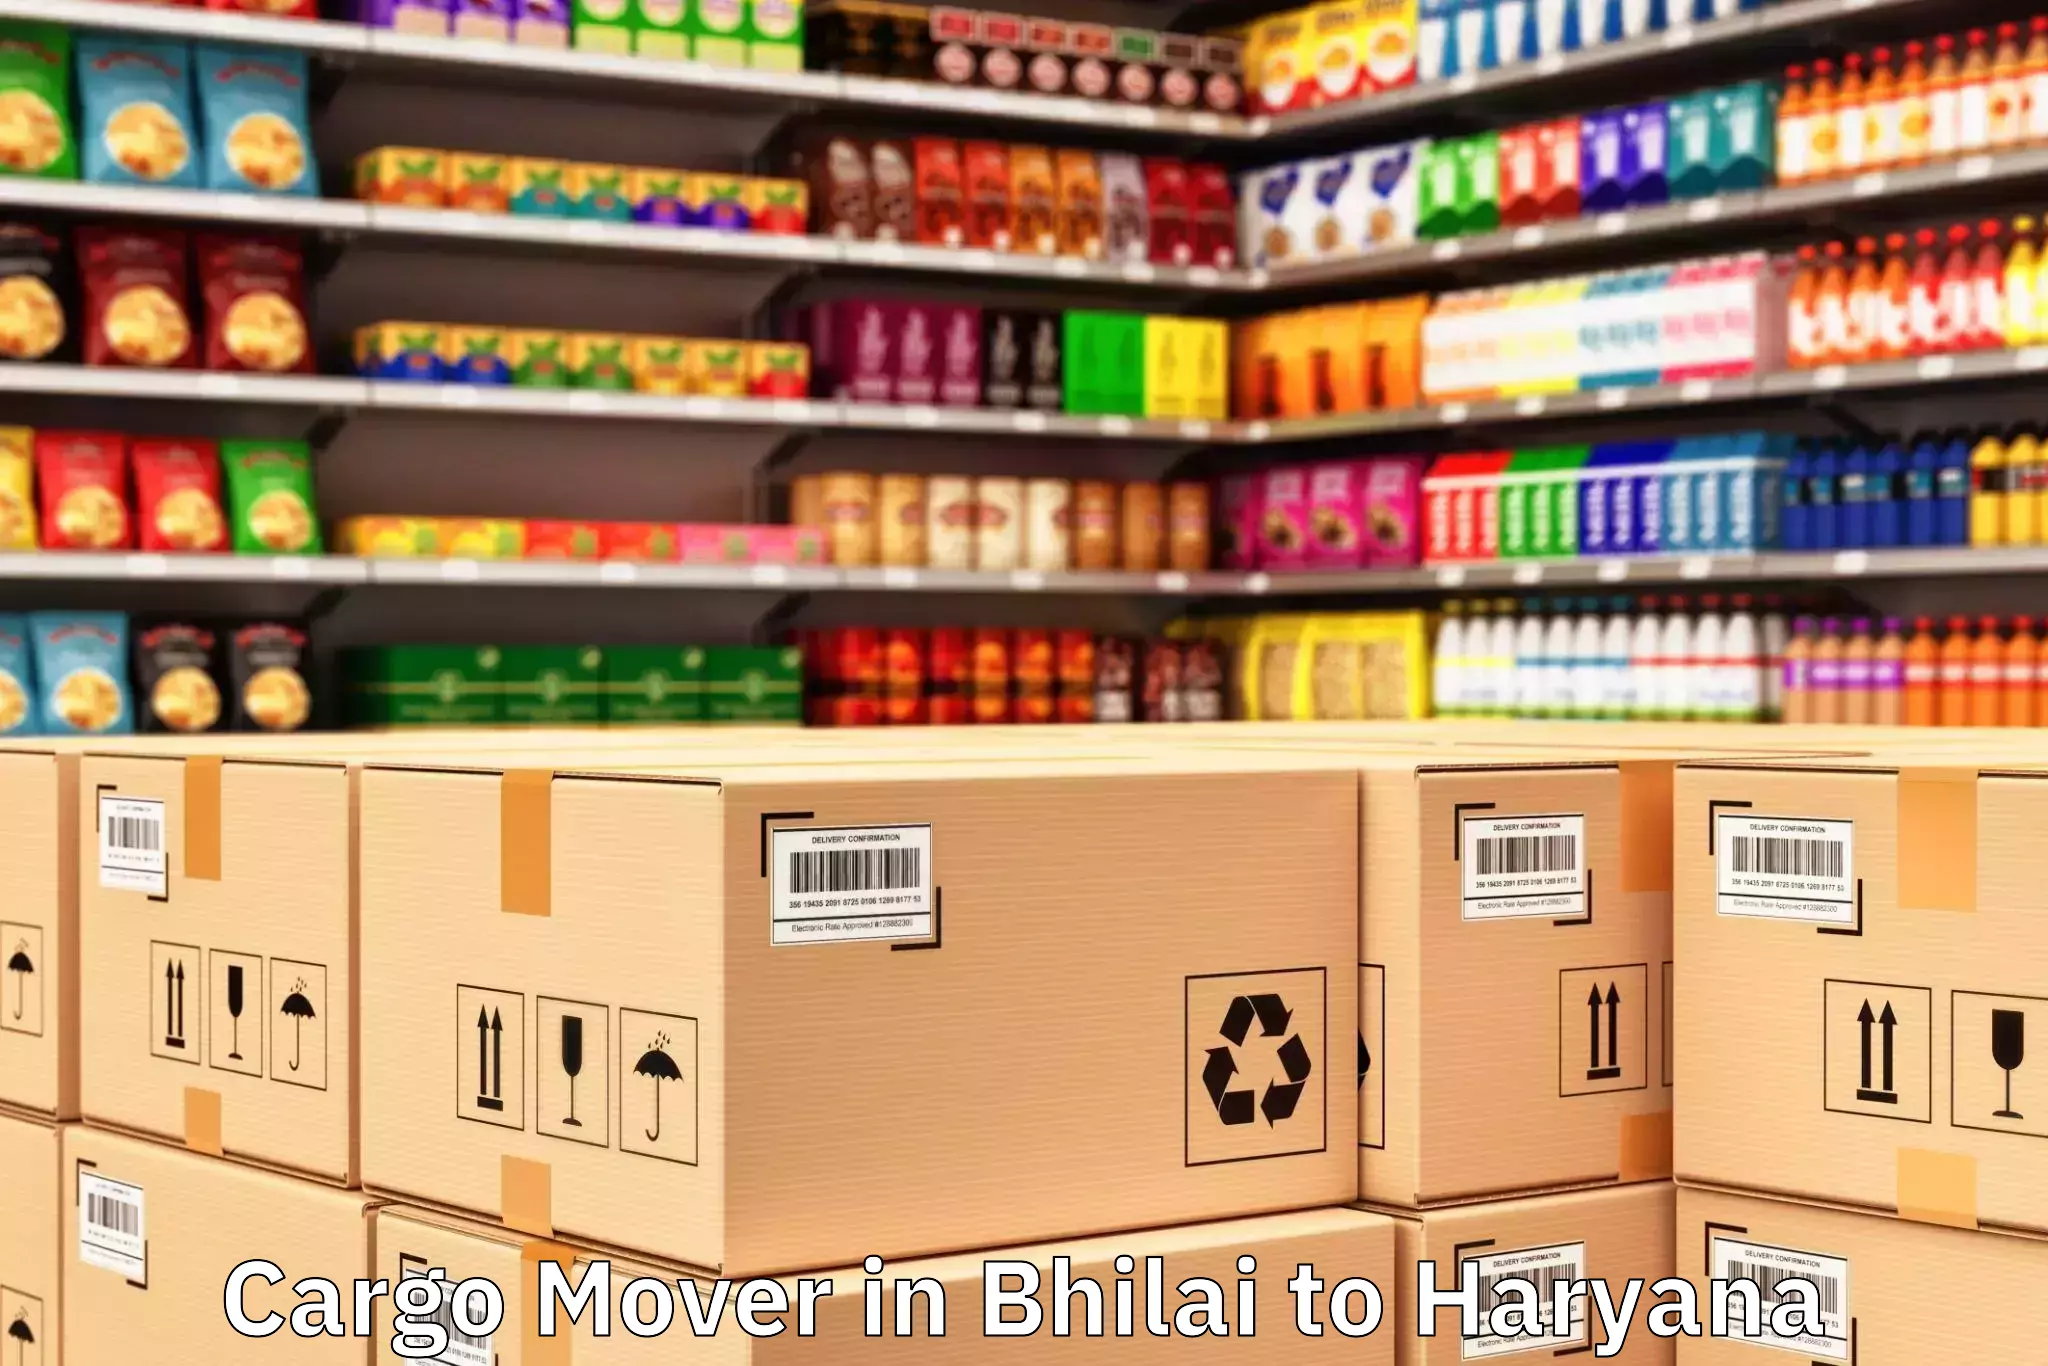 Hassle-Free Bhilai to Beri Road Cargo Mover